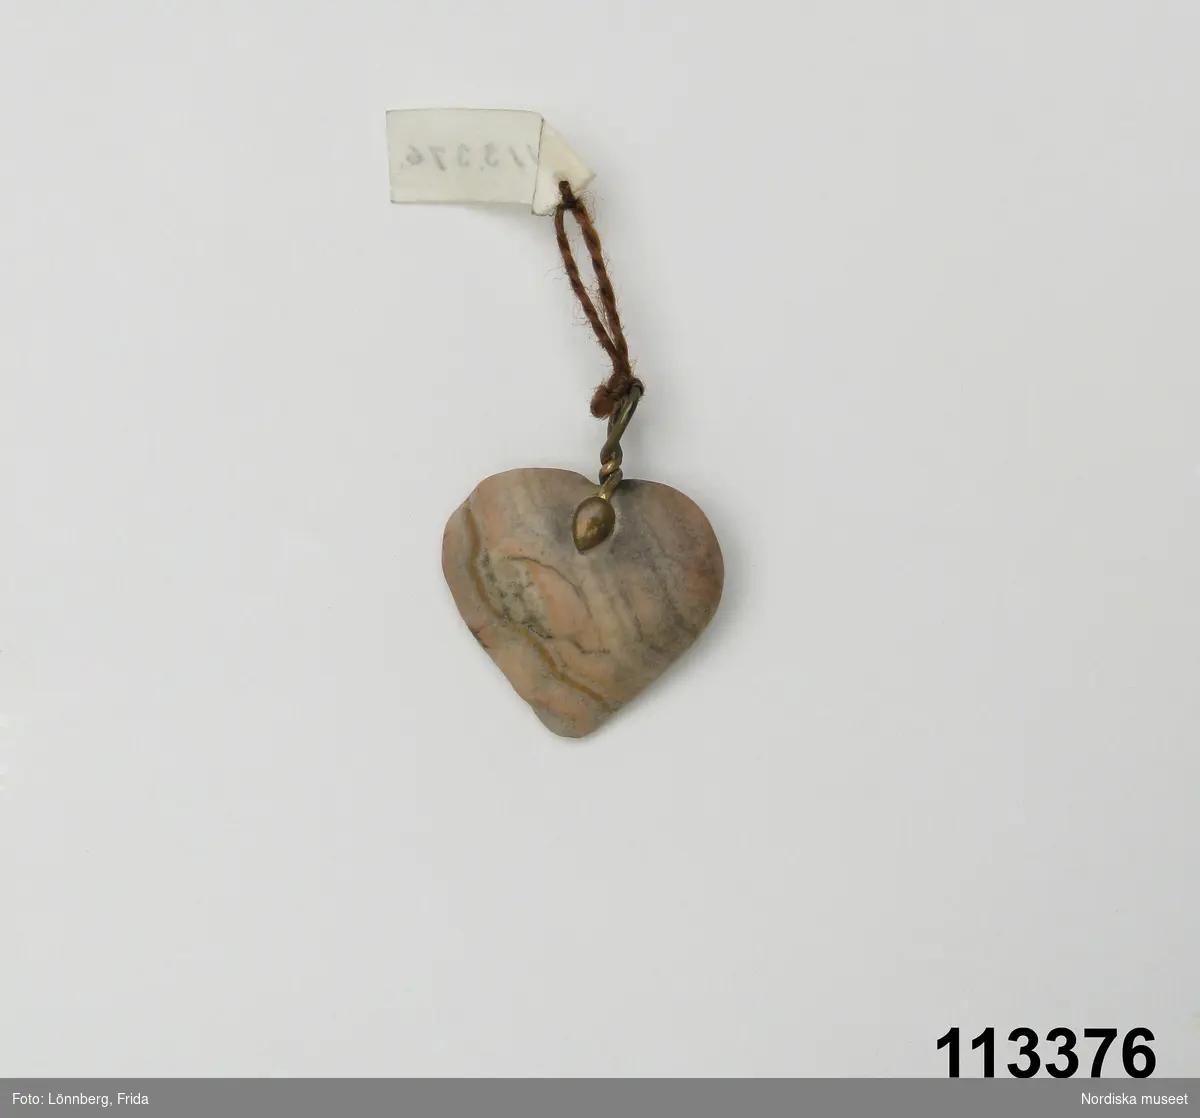 Huvudliggaren:
"Berlock av sten, hjärtformig med hängögla av koppar.
G. 6/4 1909 Elving, Anna Gunborg, fröken, Stockholm."